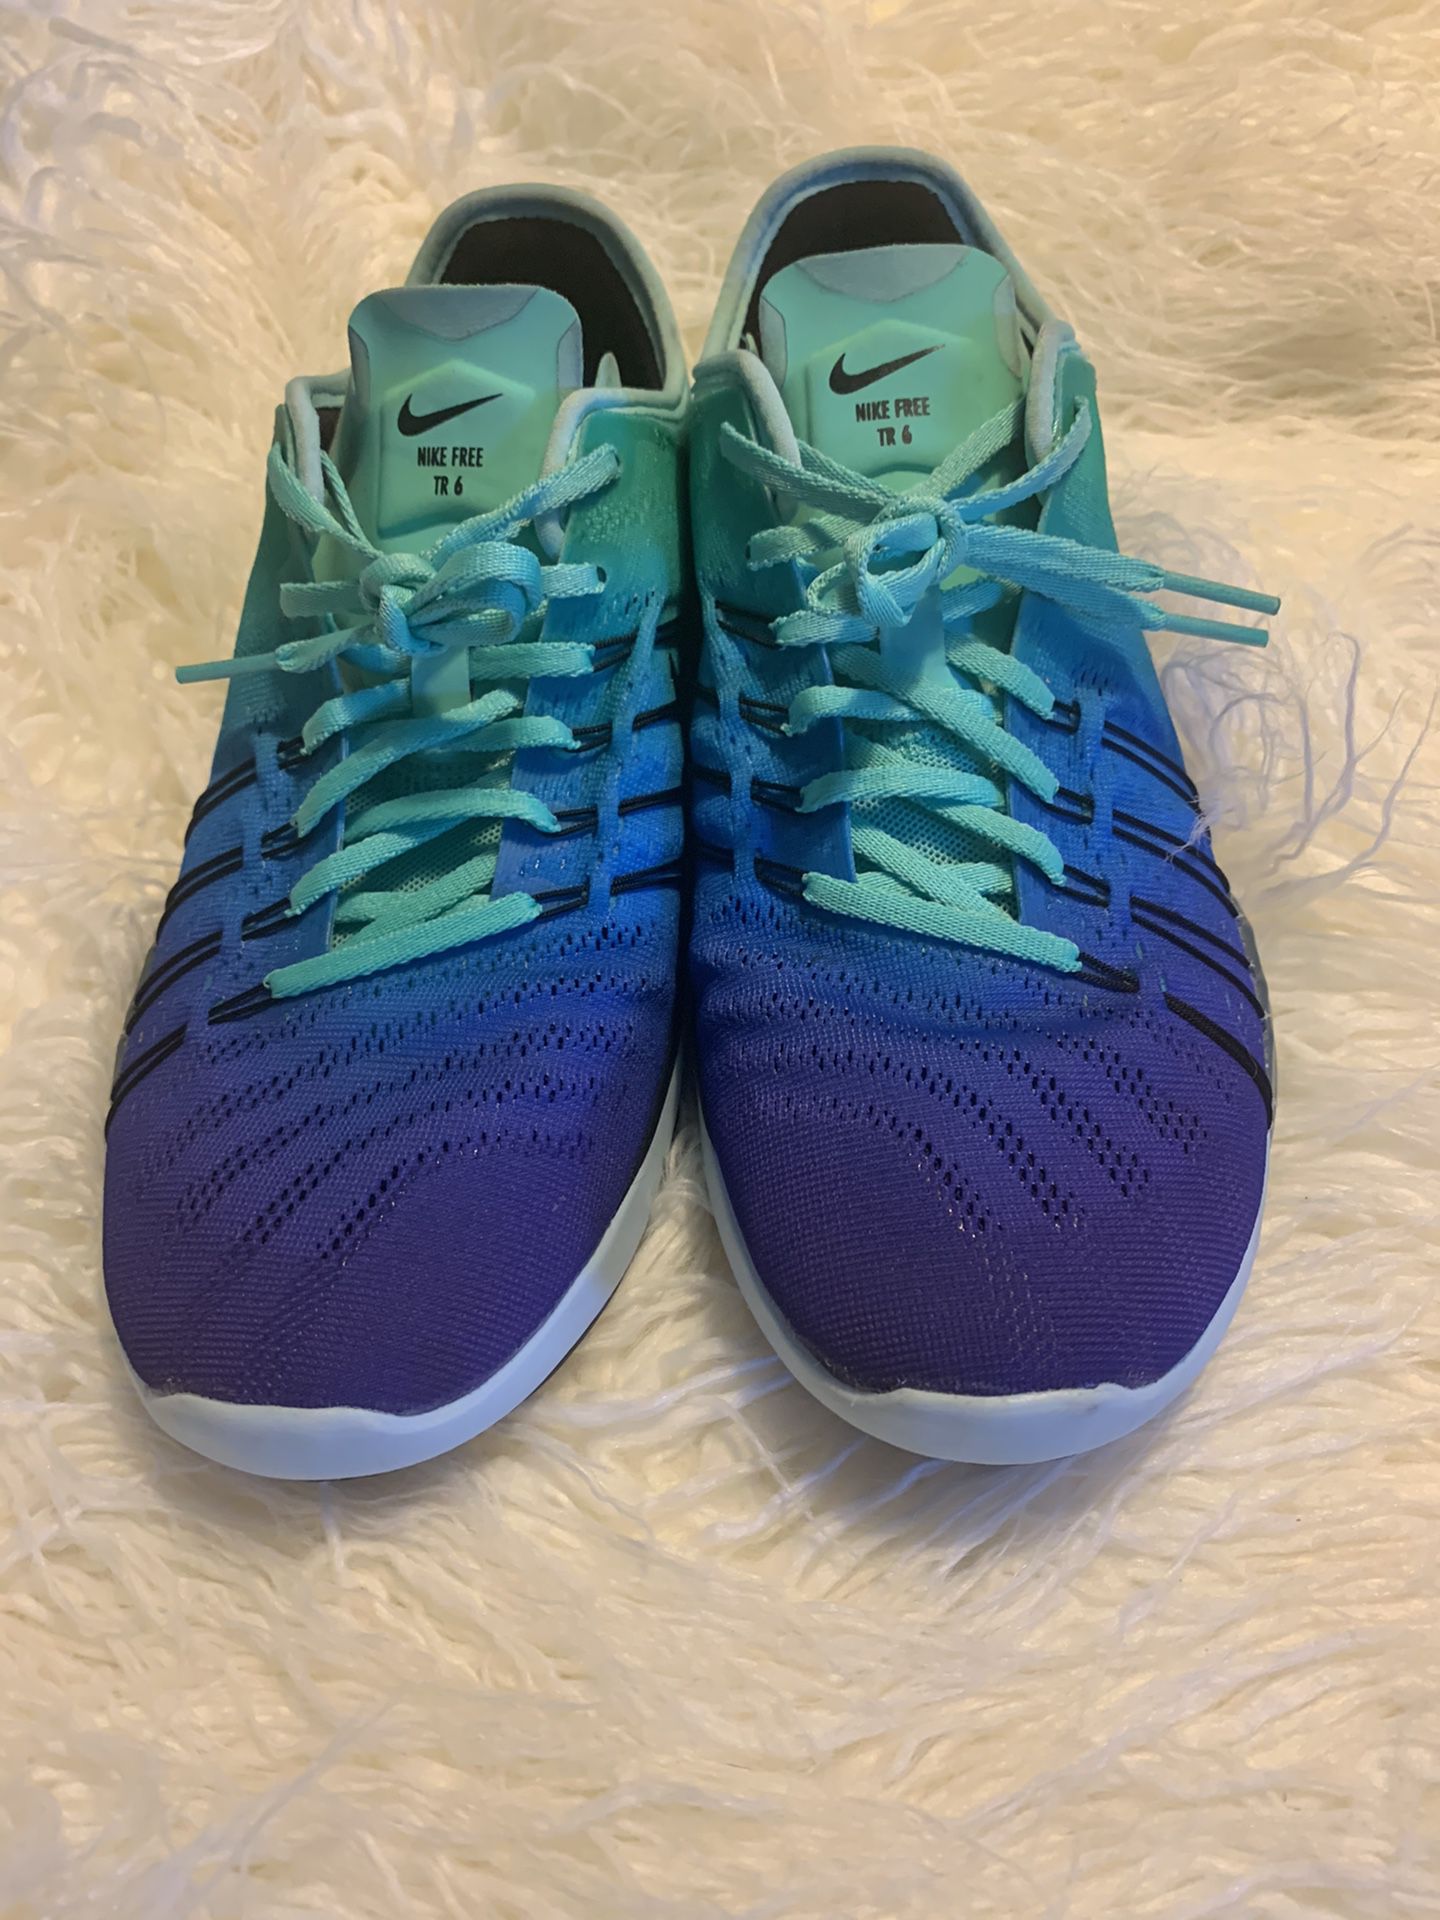 Women's Nike TR 6 Spectrum Green Light Blue Dark Blue 849804-300 8.5 Sale in Los Angeles, - OfferUp